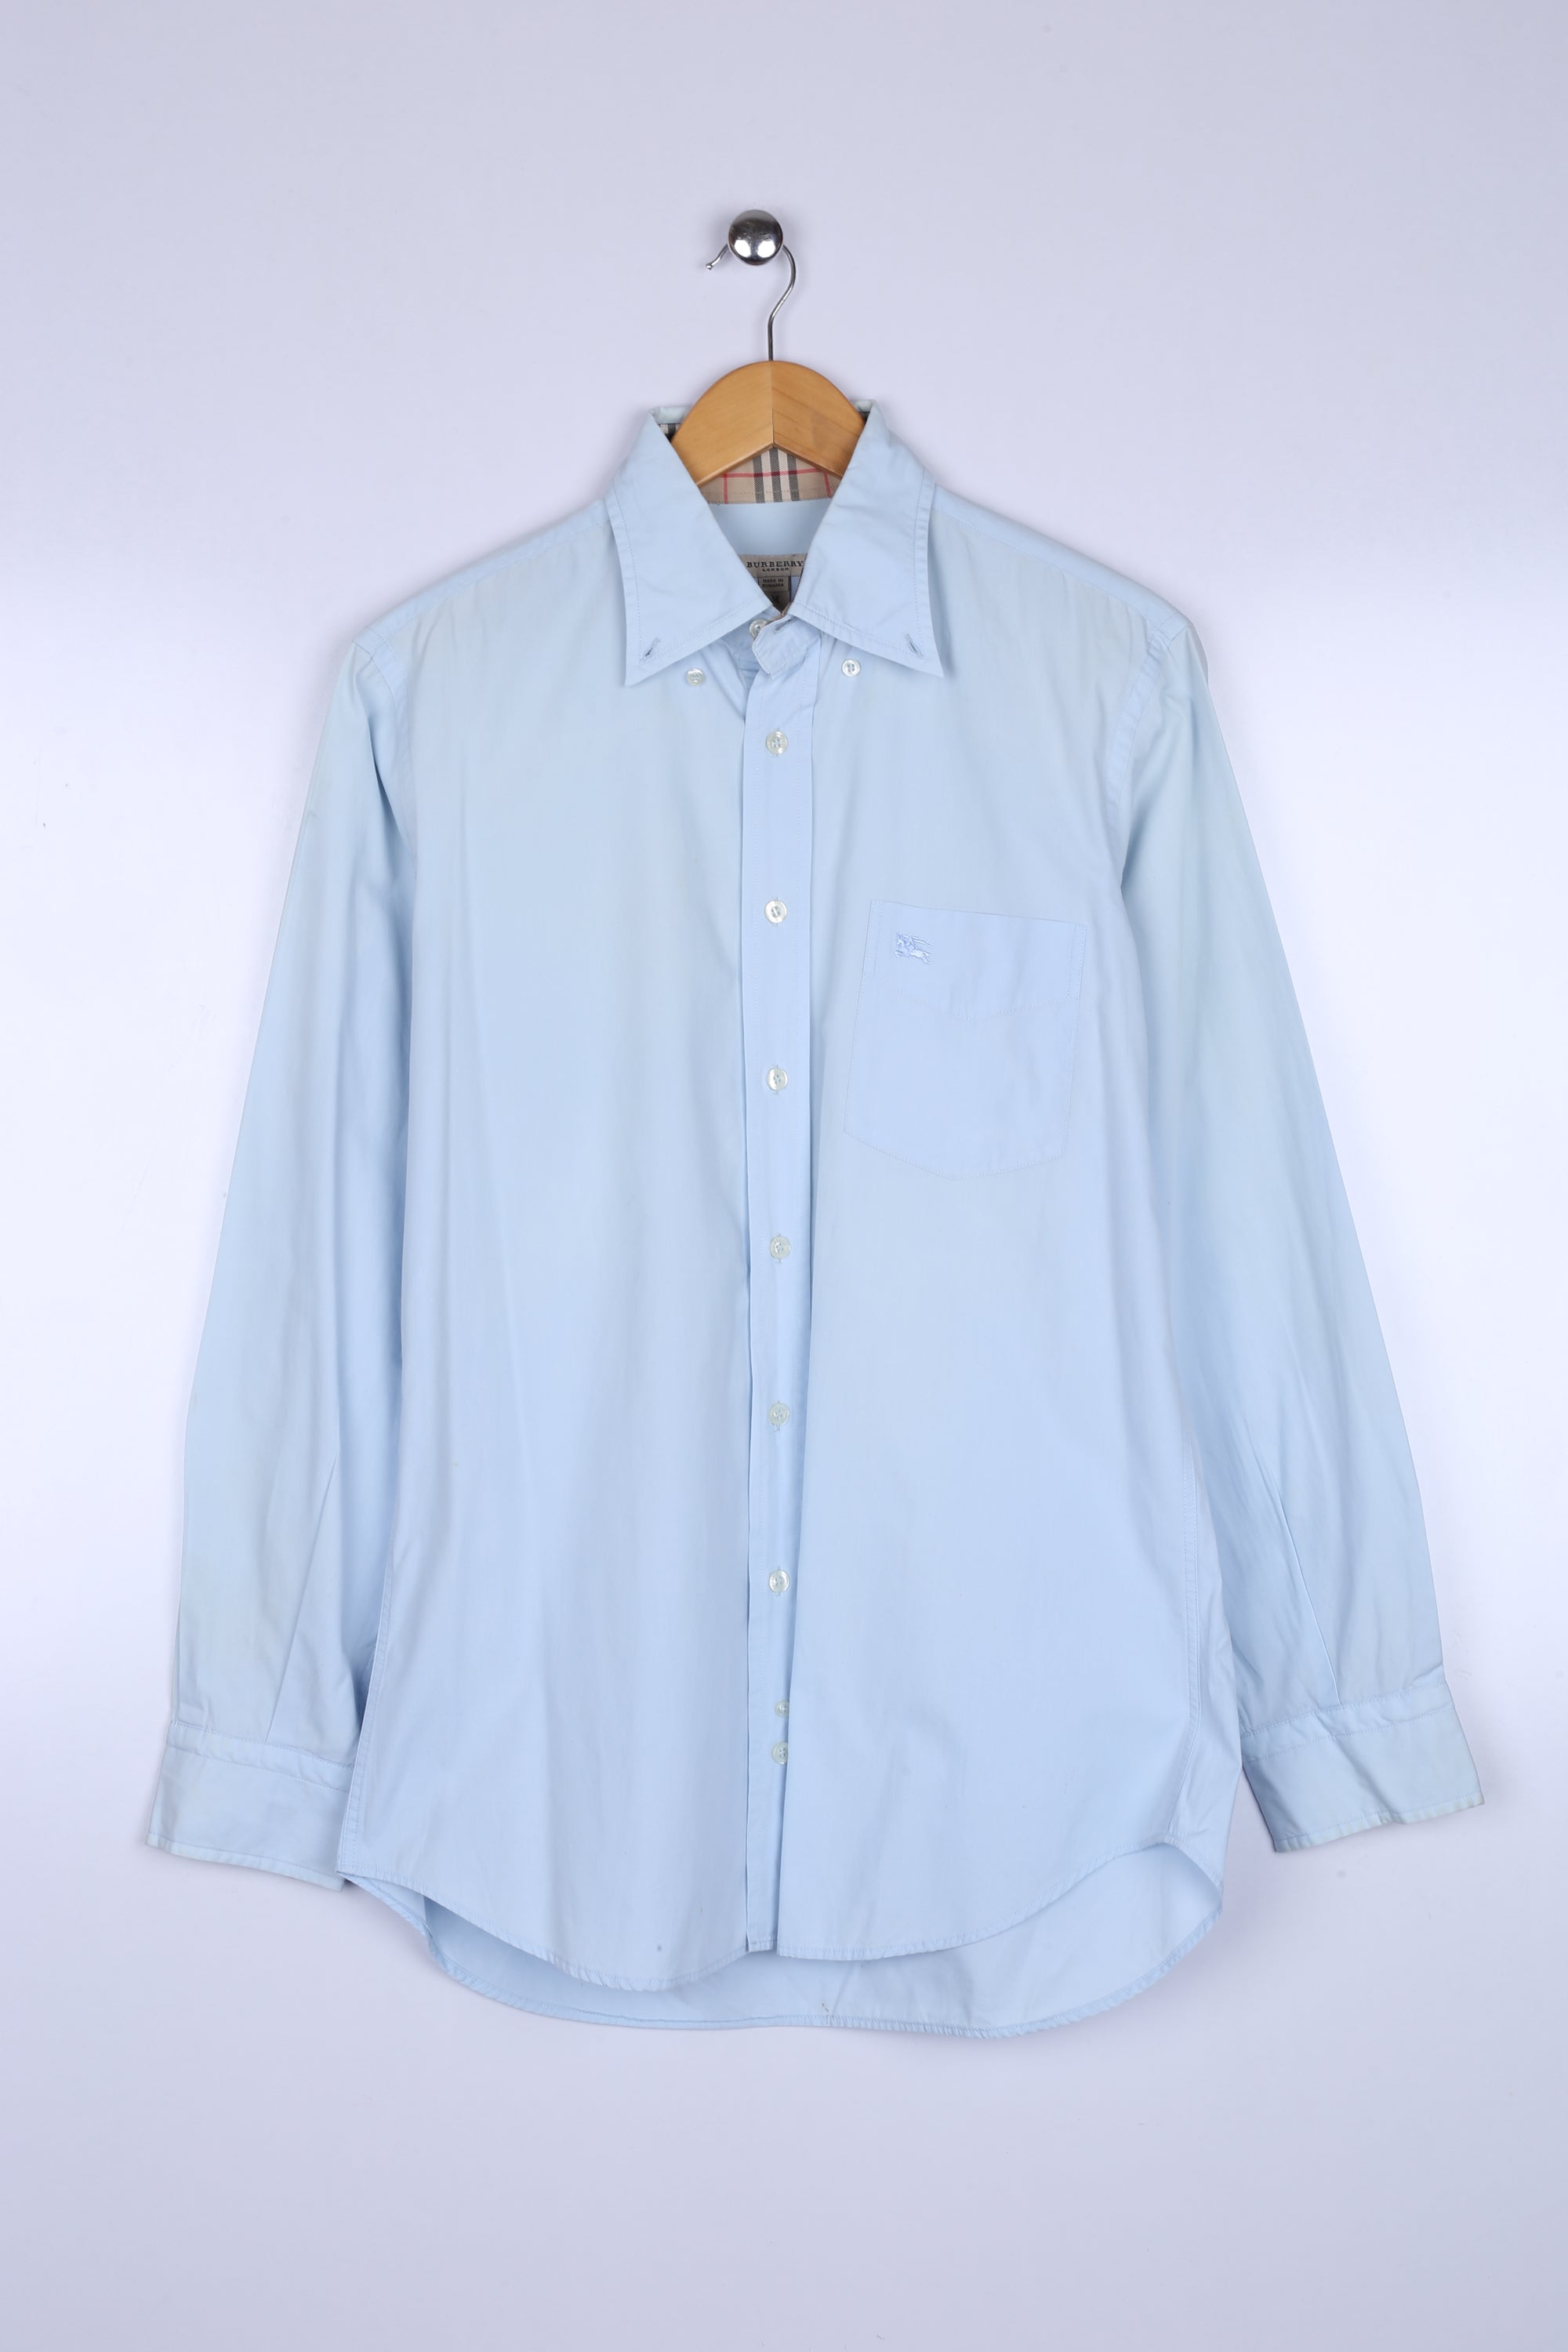 Vintage Burberry Shirt Sky Blue